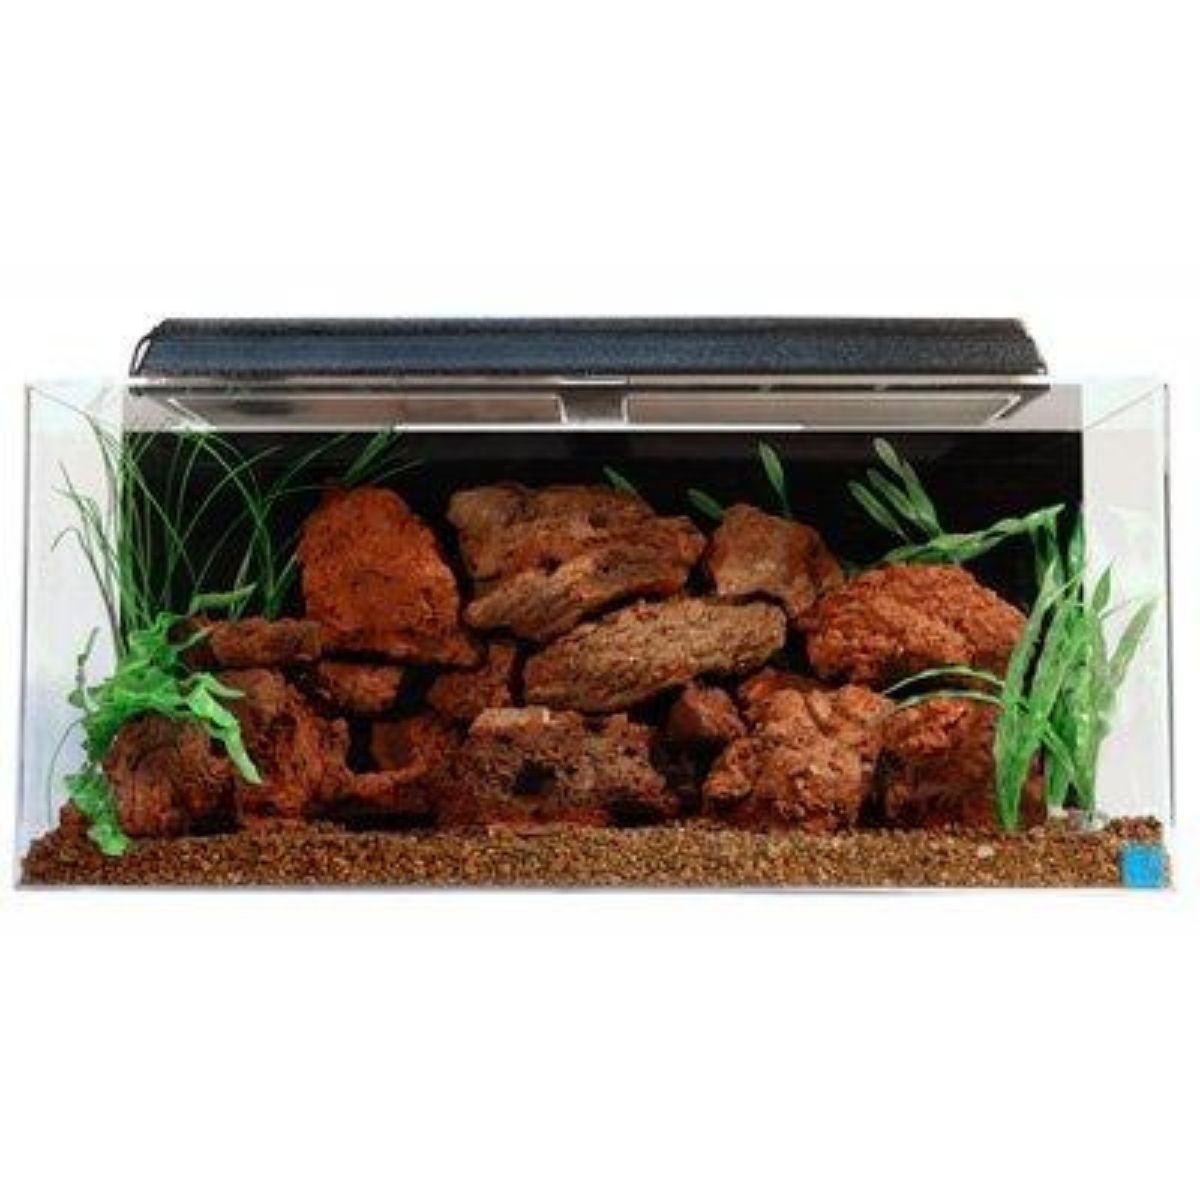 Best 40 Gallon Fish Tank Seaclear Acrylic Aquarium Combo Set